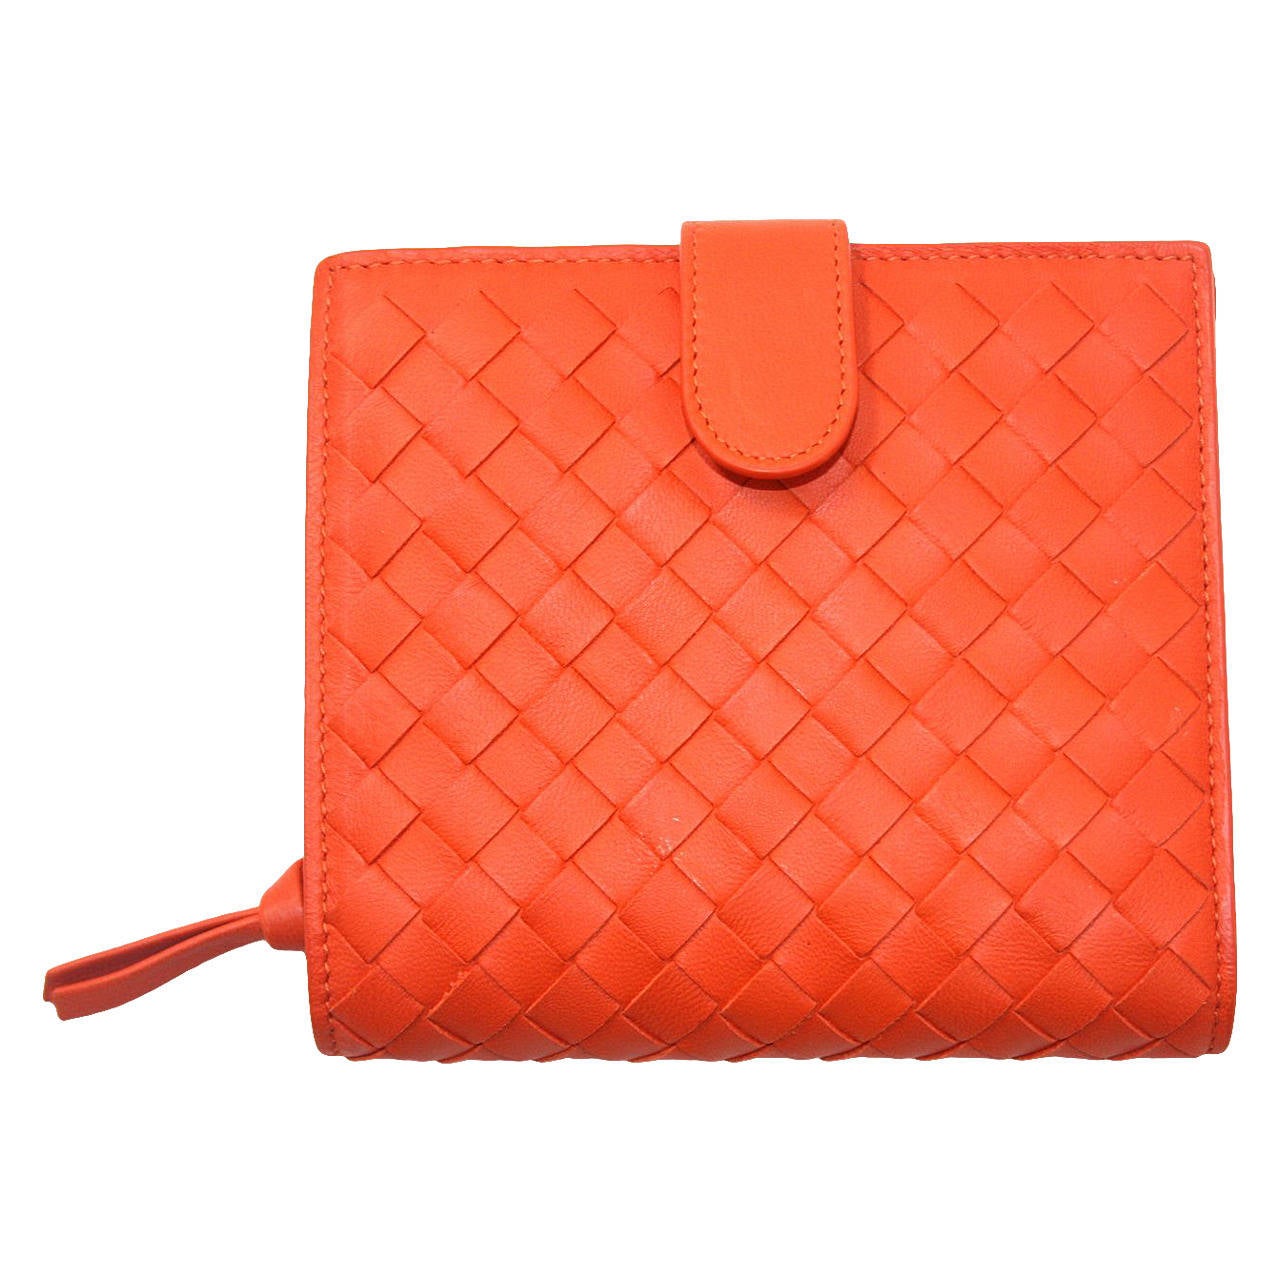 Bottega Veneta Orange Woven Leather Small Wallet